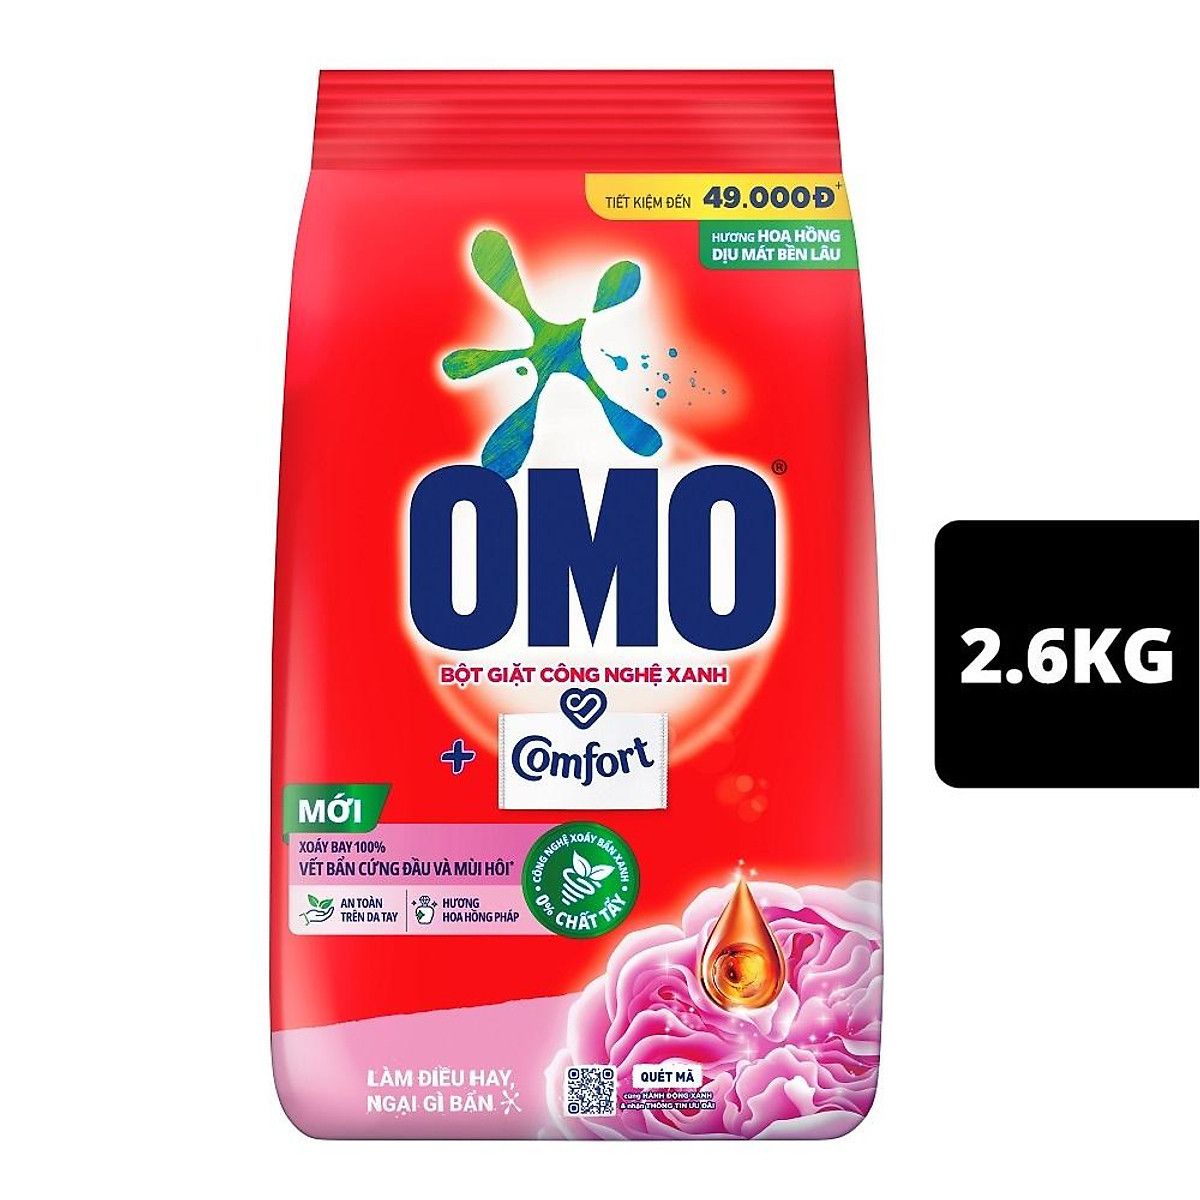  Bột Giặt OMO Comfort Tinh Dầu Thơm Ngất Ngây - Túi 2.6KG 